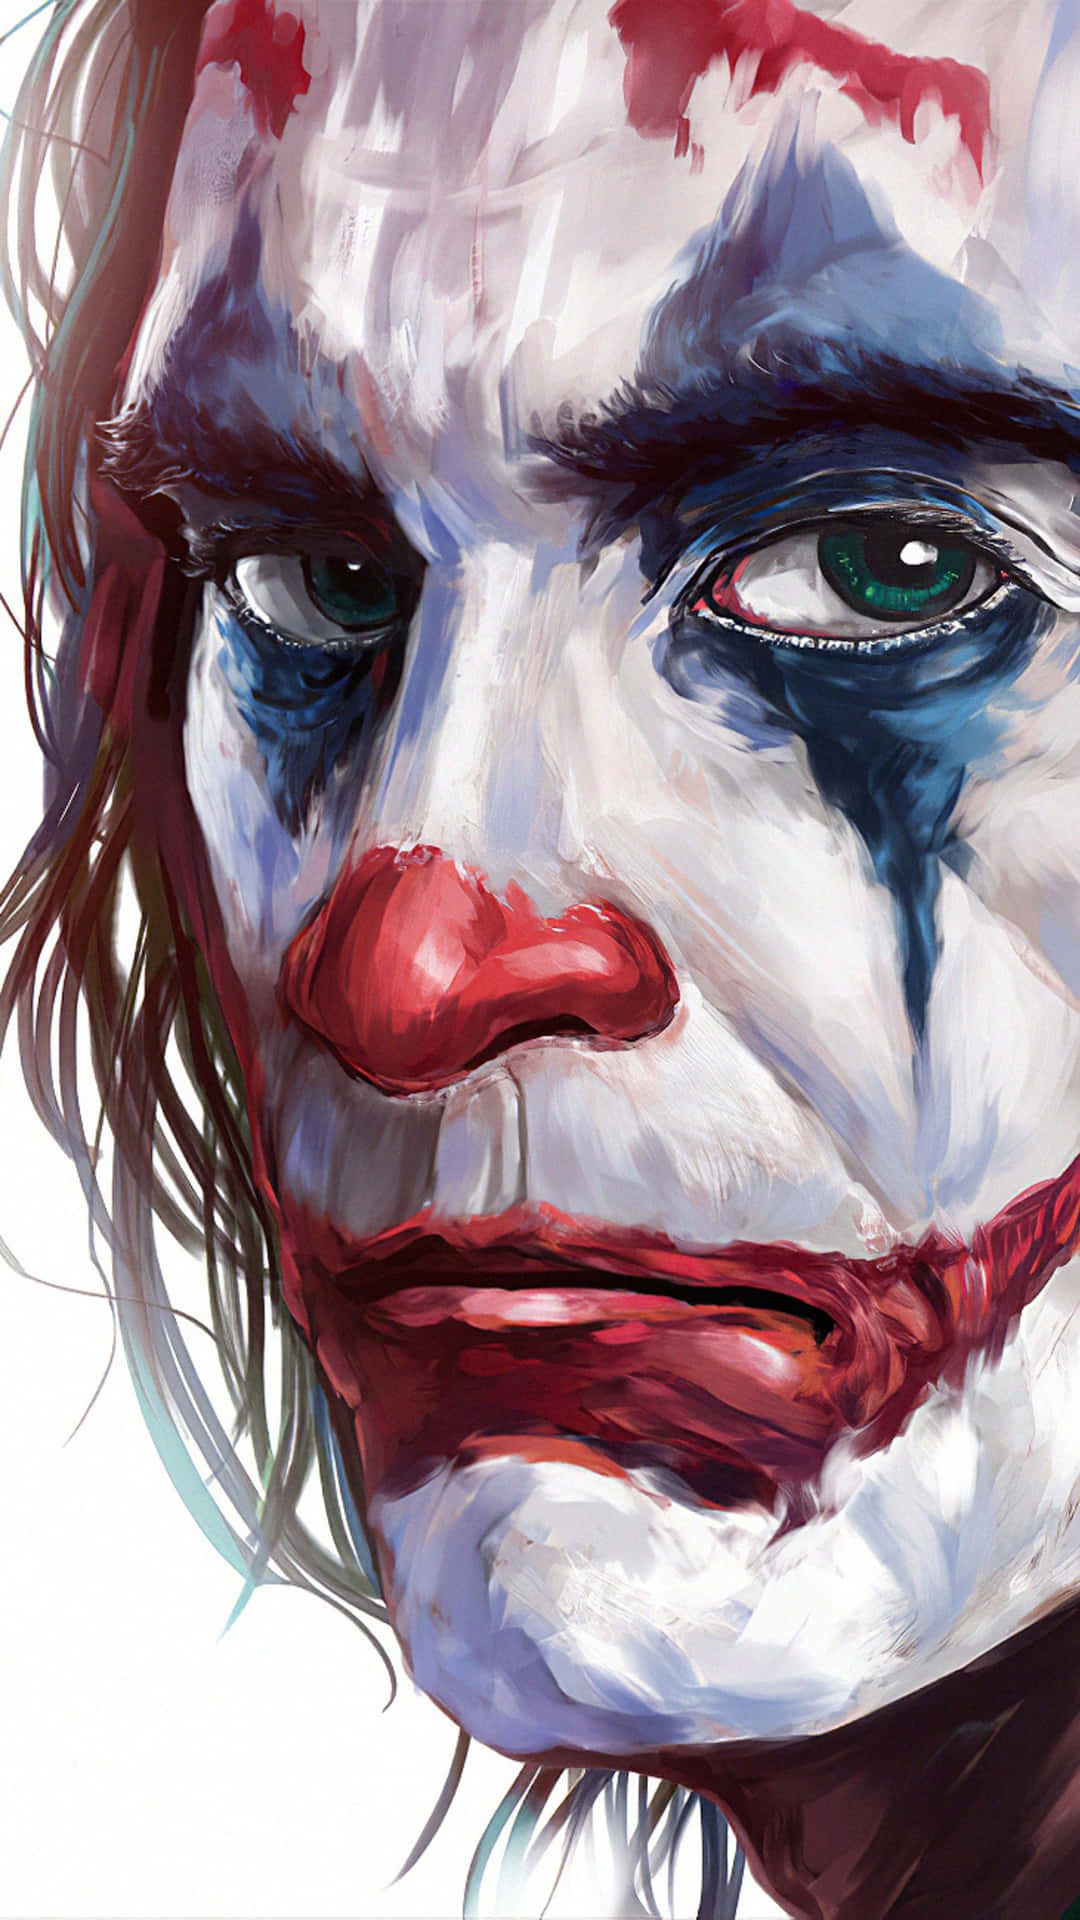 Enmålning Av En Joker Med Rött Och Blått Smink På En Dator- Eller Mobilskärmsbakgrund.